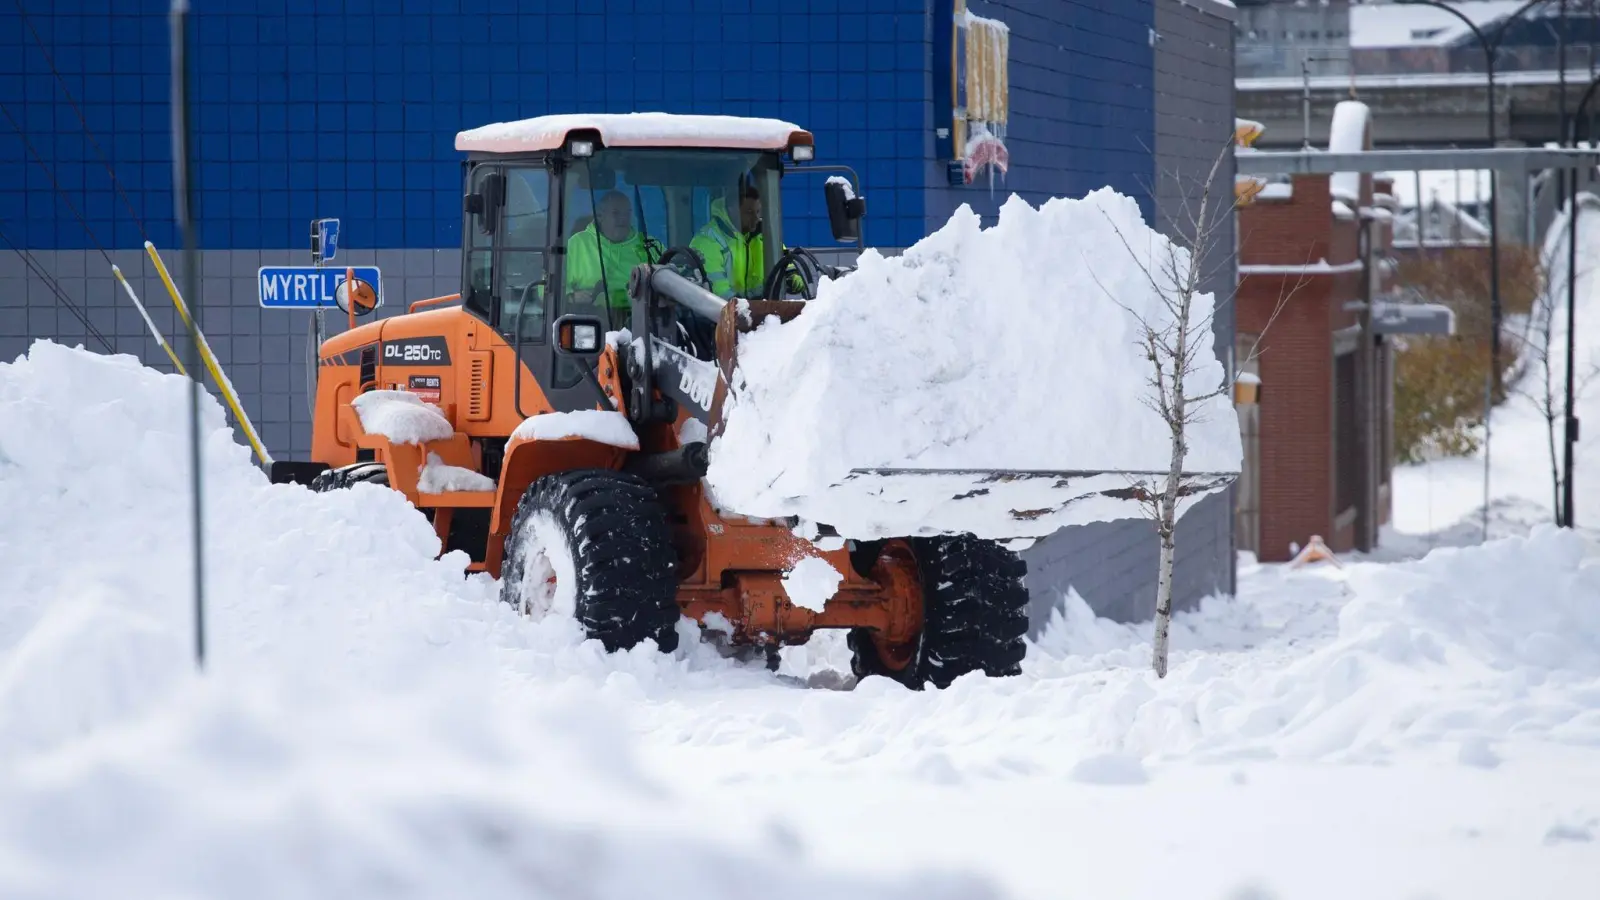 Mitarbeiter des Winterdienstes räumen Schnee weg. (Foto: Joshua Bessex/AP/dpa)